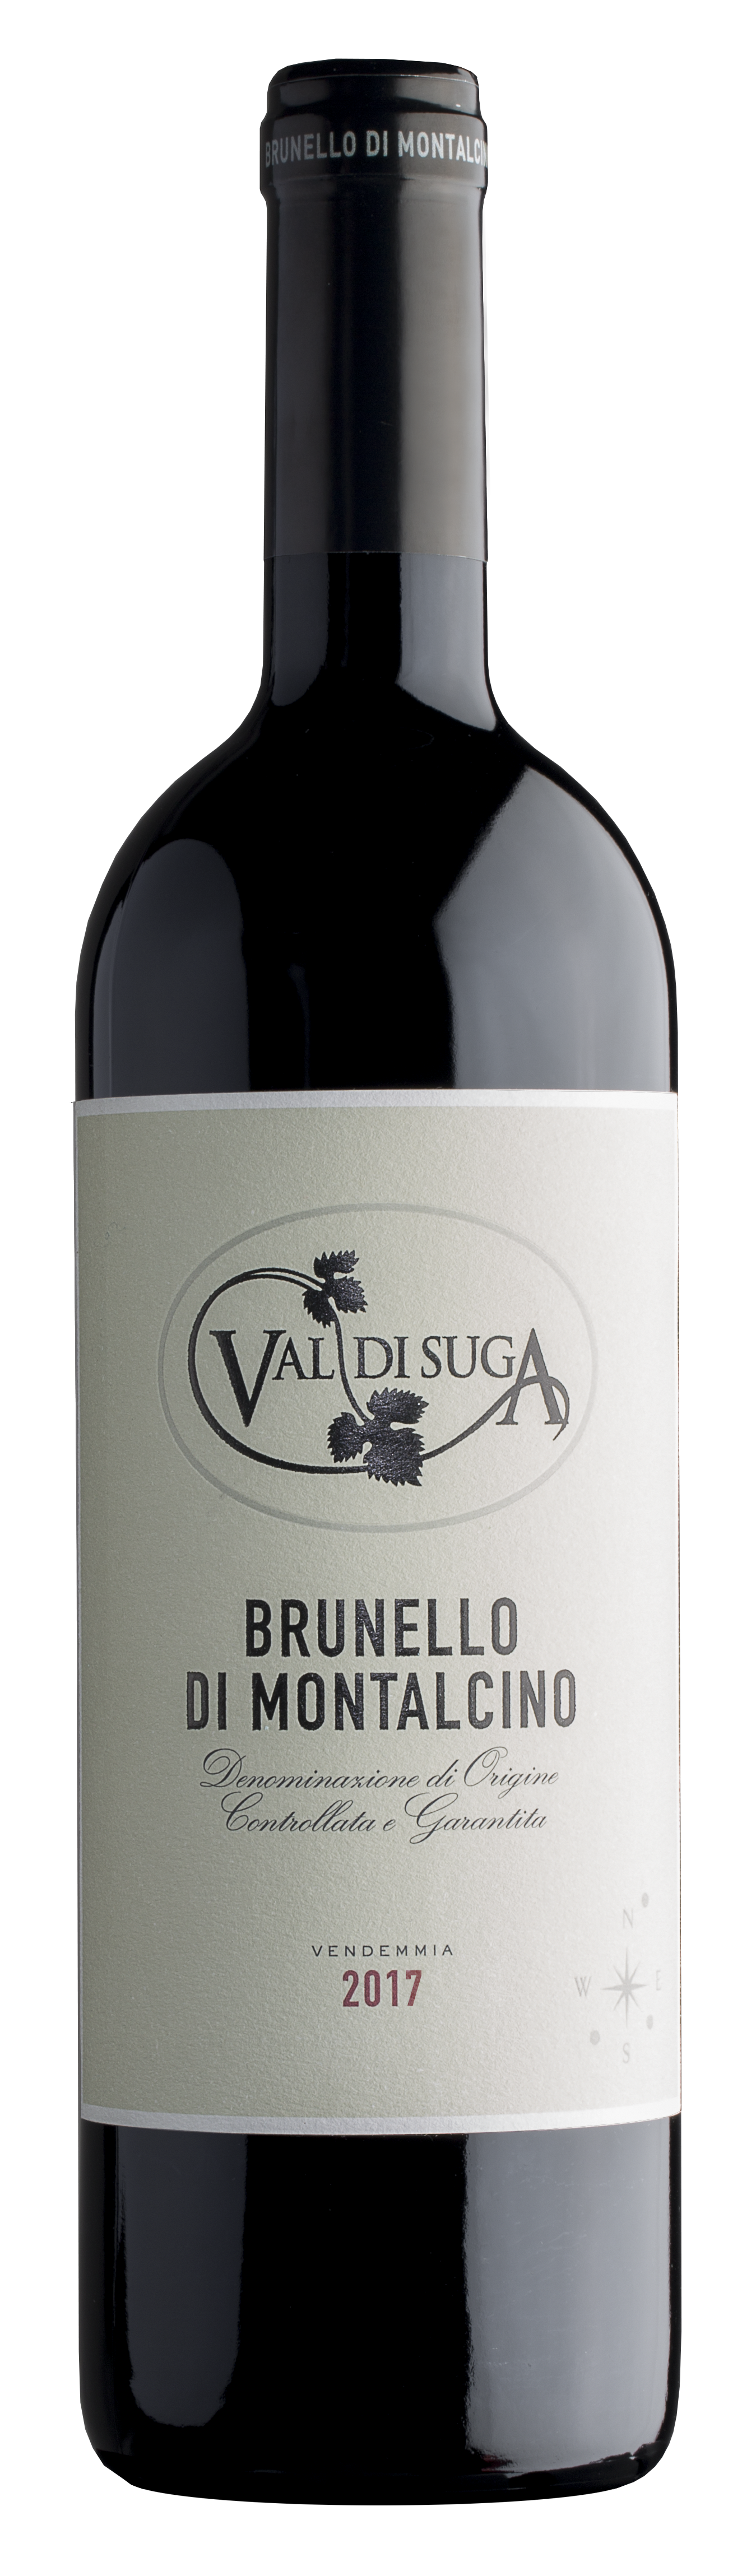 Brunello di Montalcino Val di Suga 2017 bottle shot